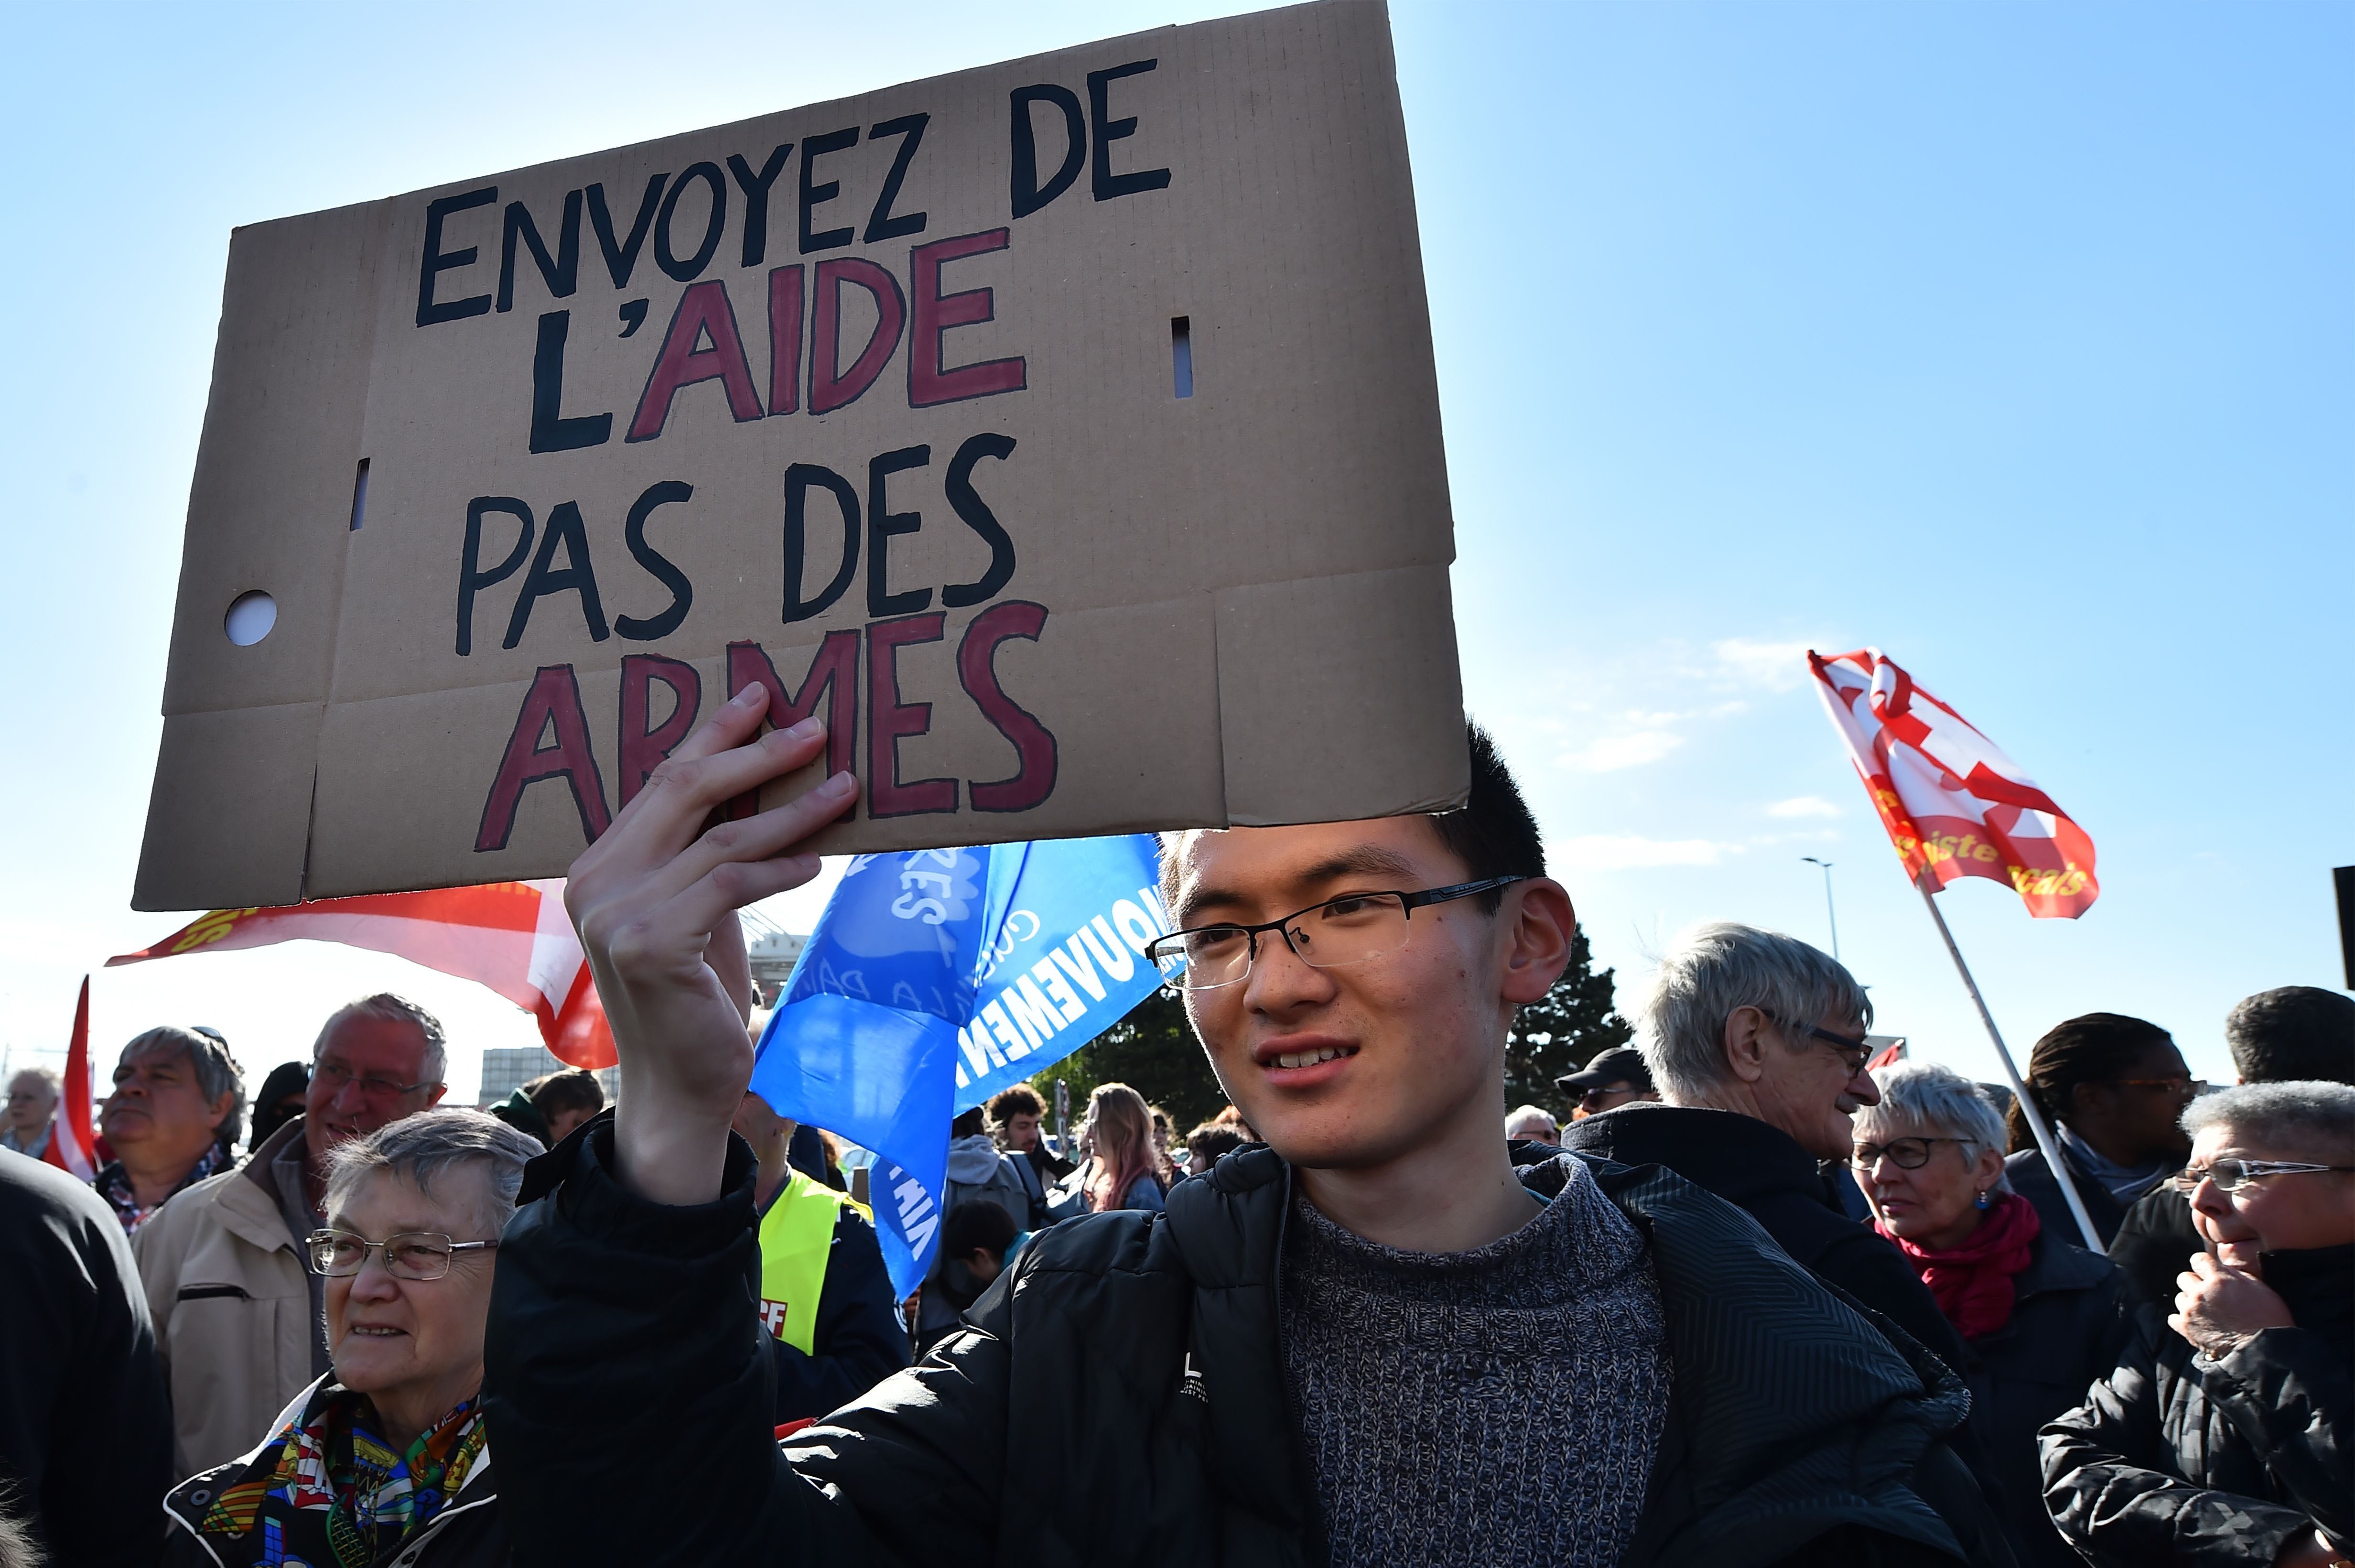 Un manifestant tient une pancarte sur laquelle on peut lire "Envoyez de l'aide, pas des armes"